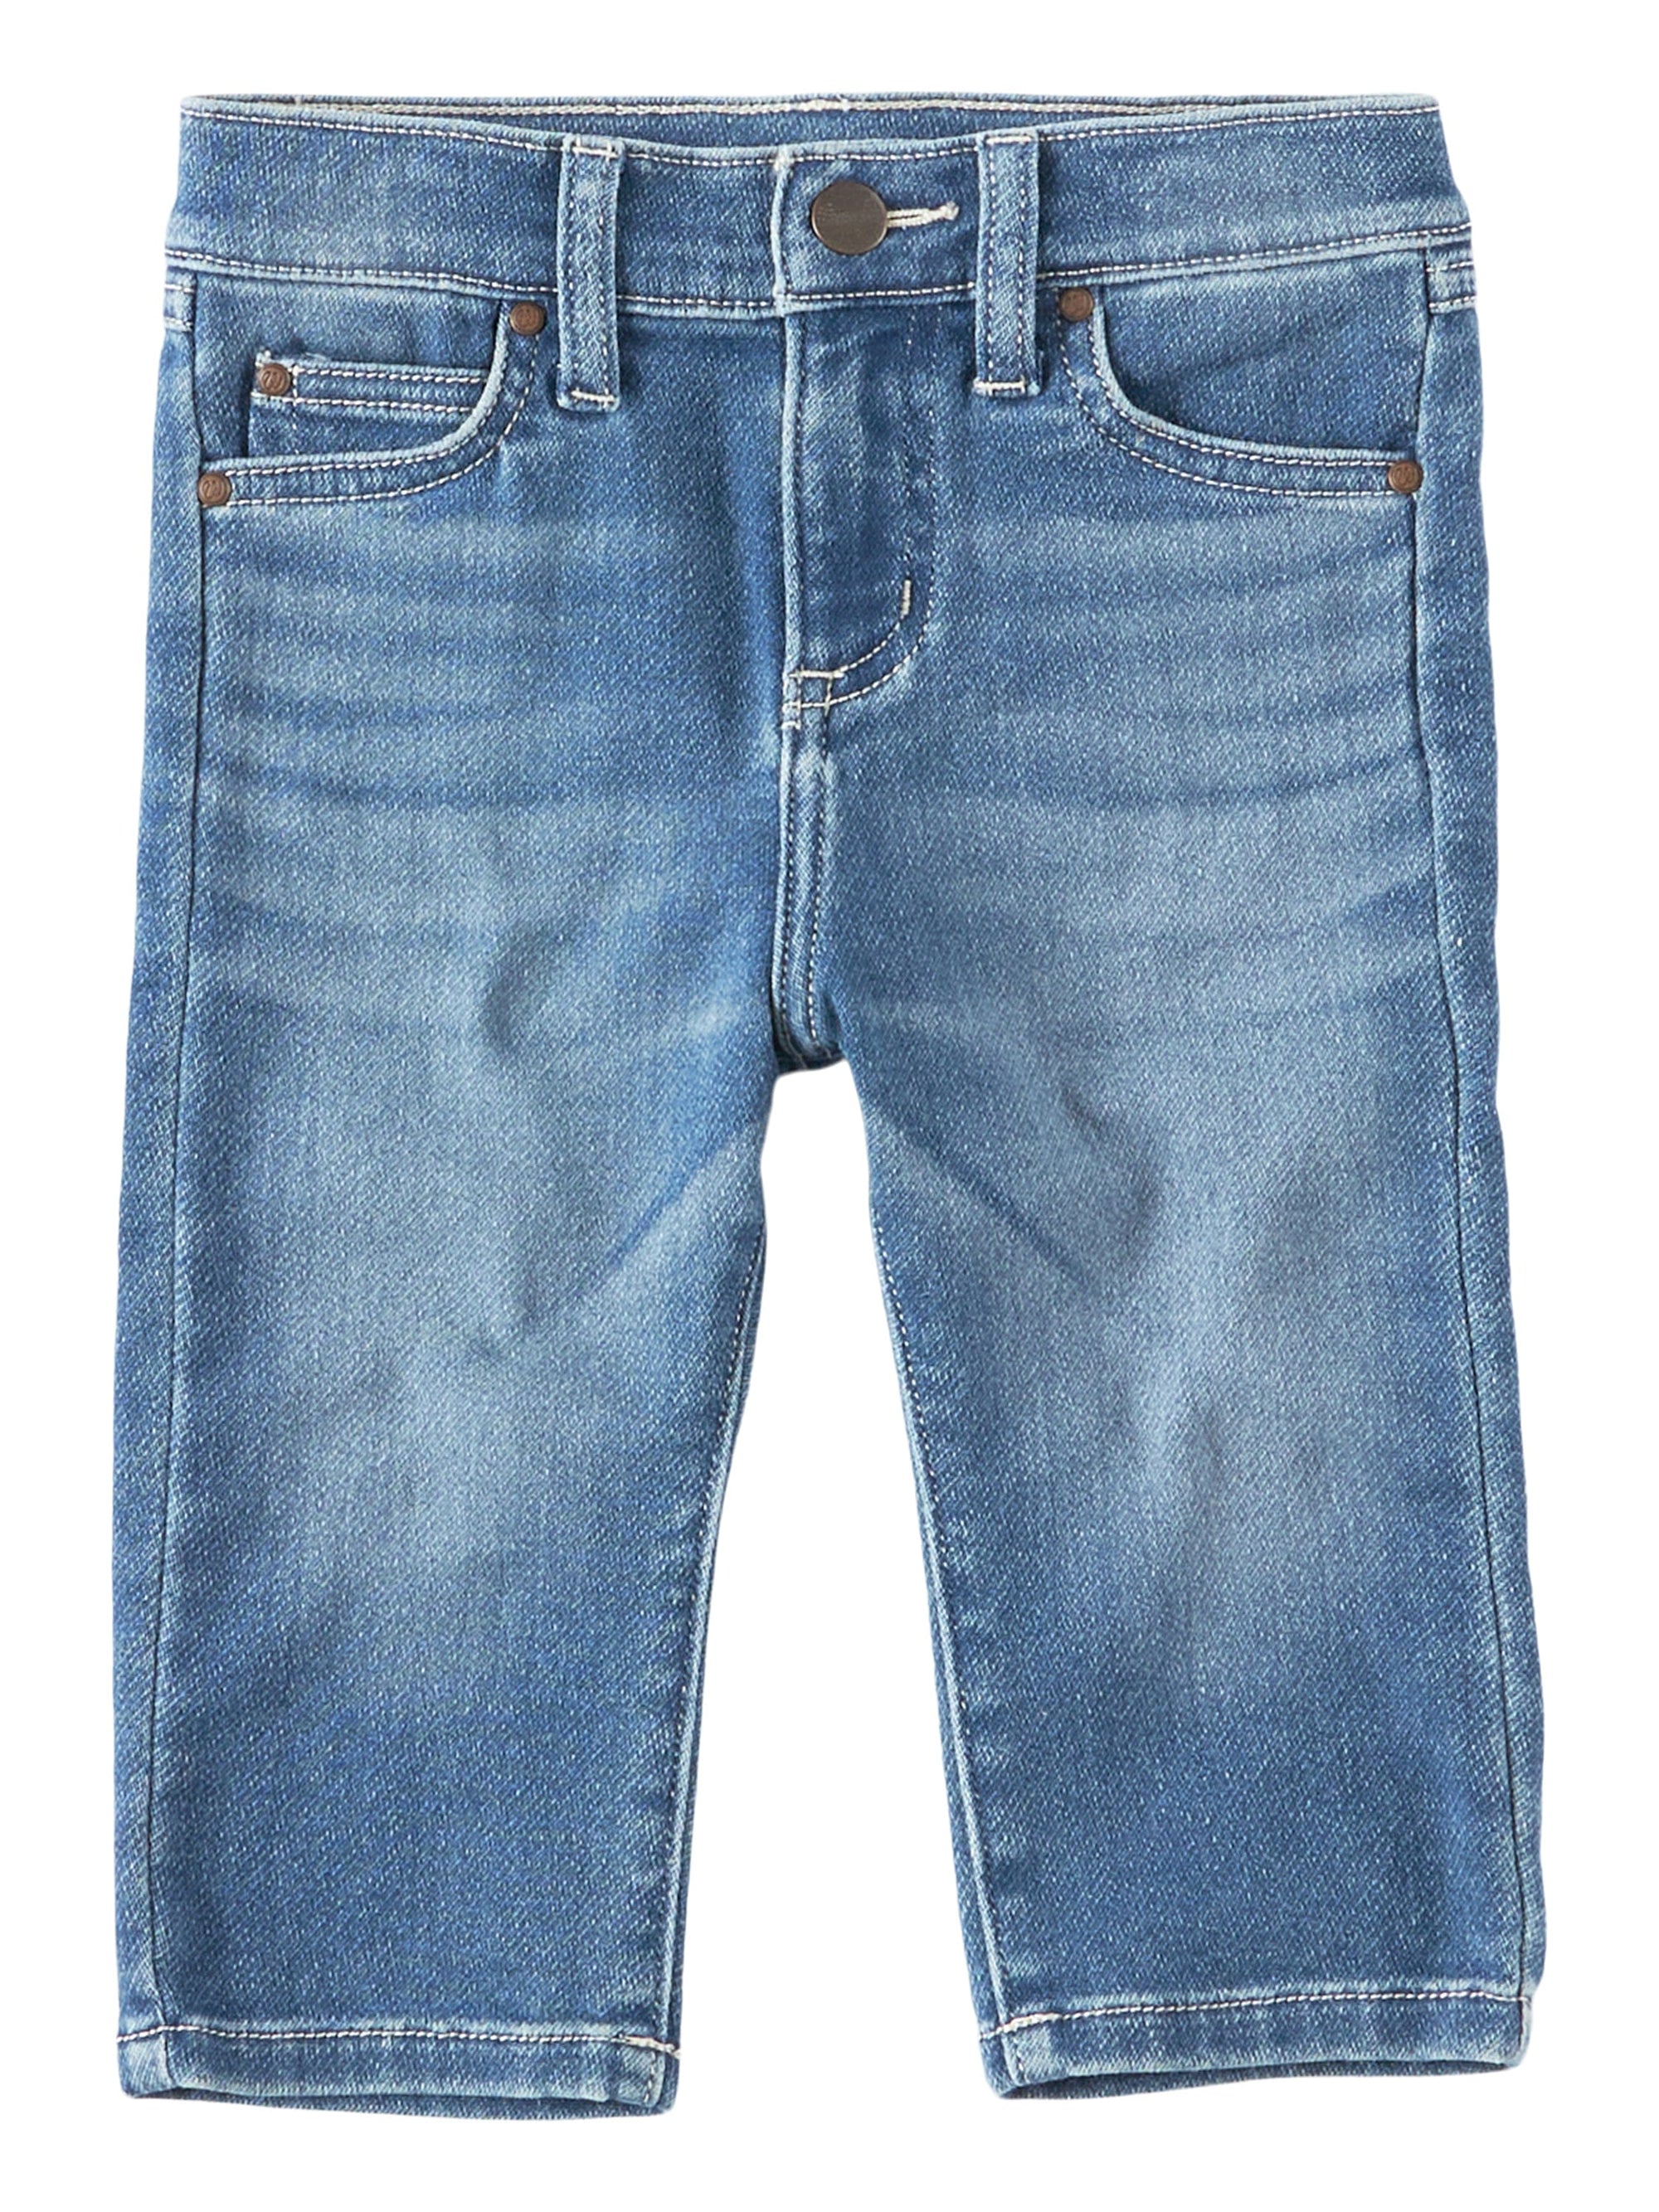 Kids Jeans - Russell's Western Wear, Inc.